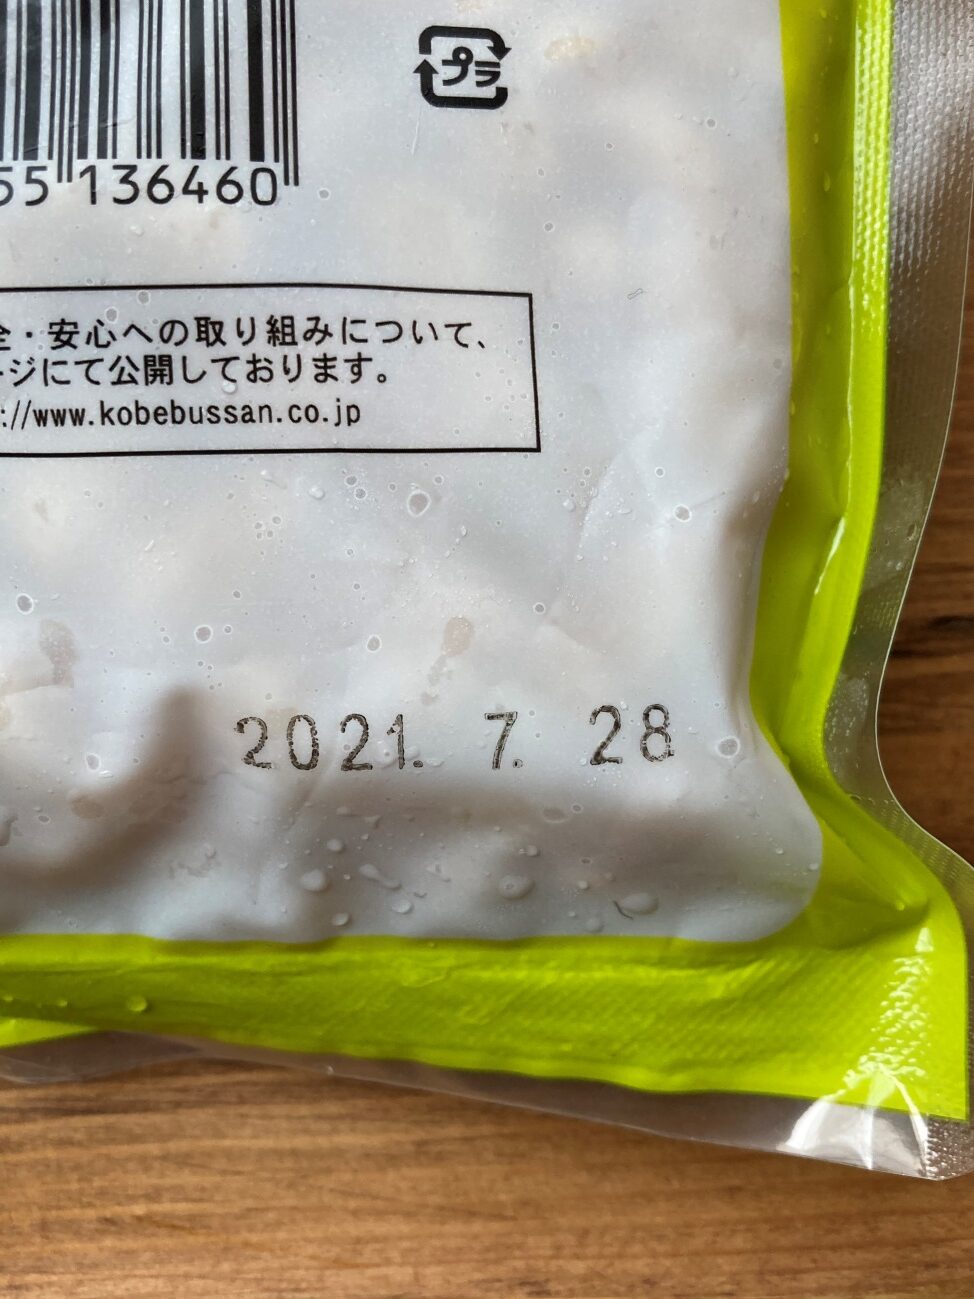 業務スーパーの冷凍ゆで大豆の賞味期限表記